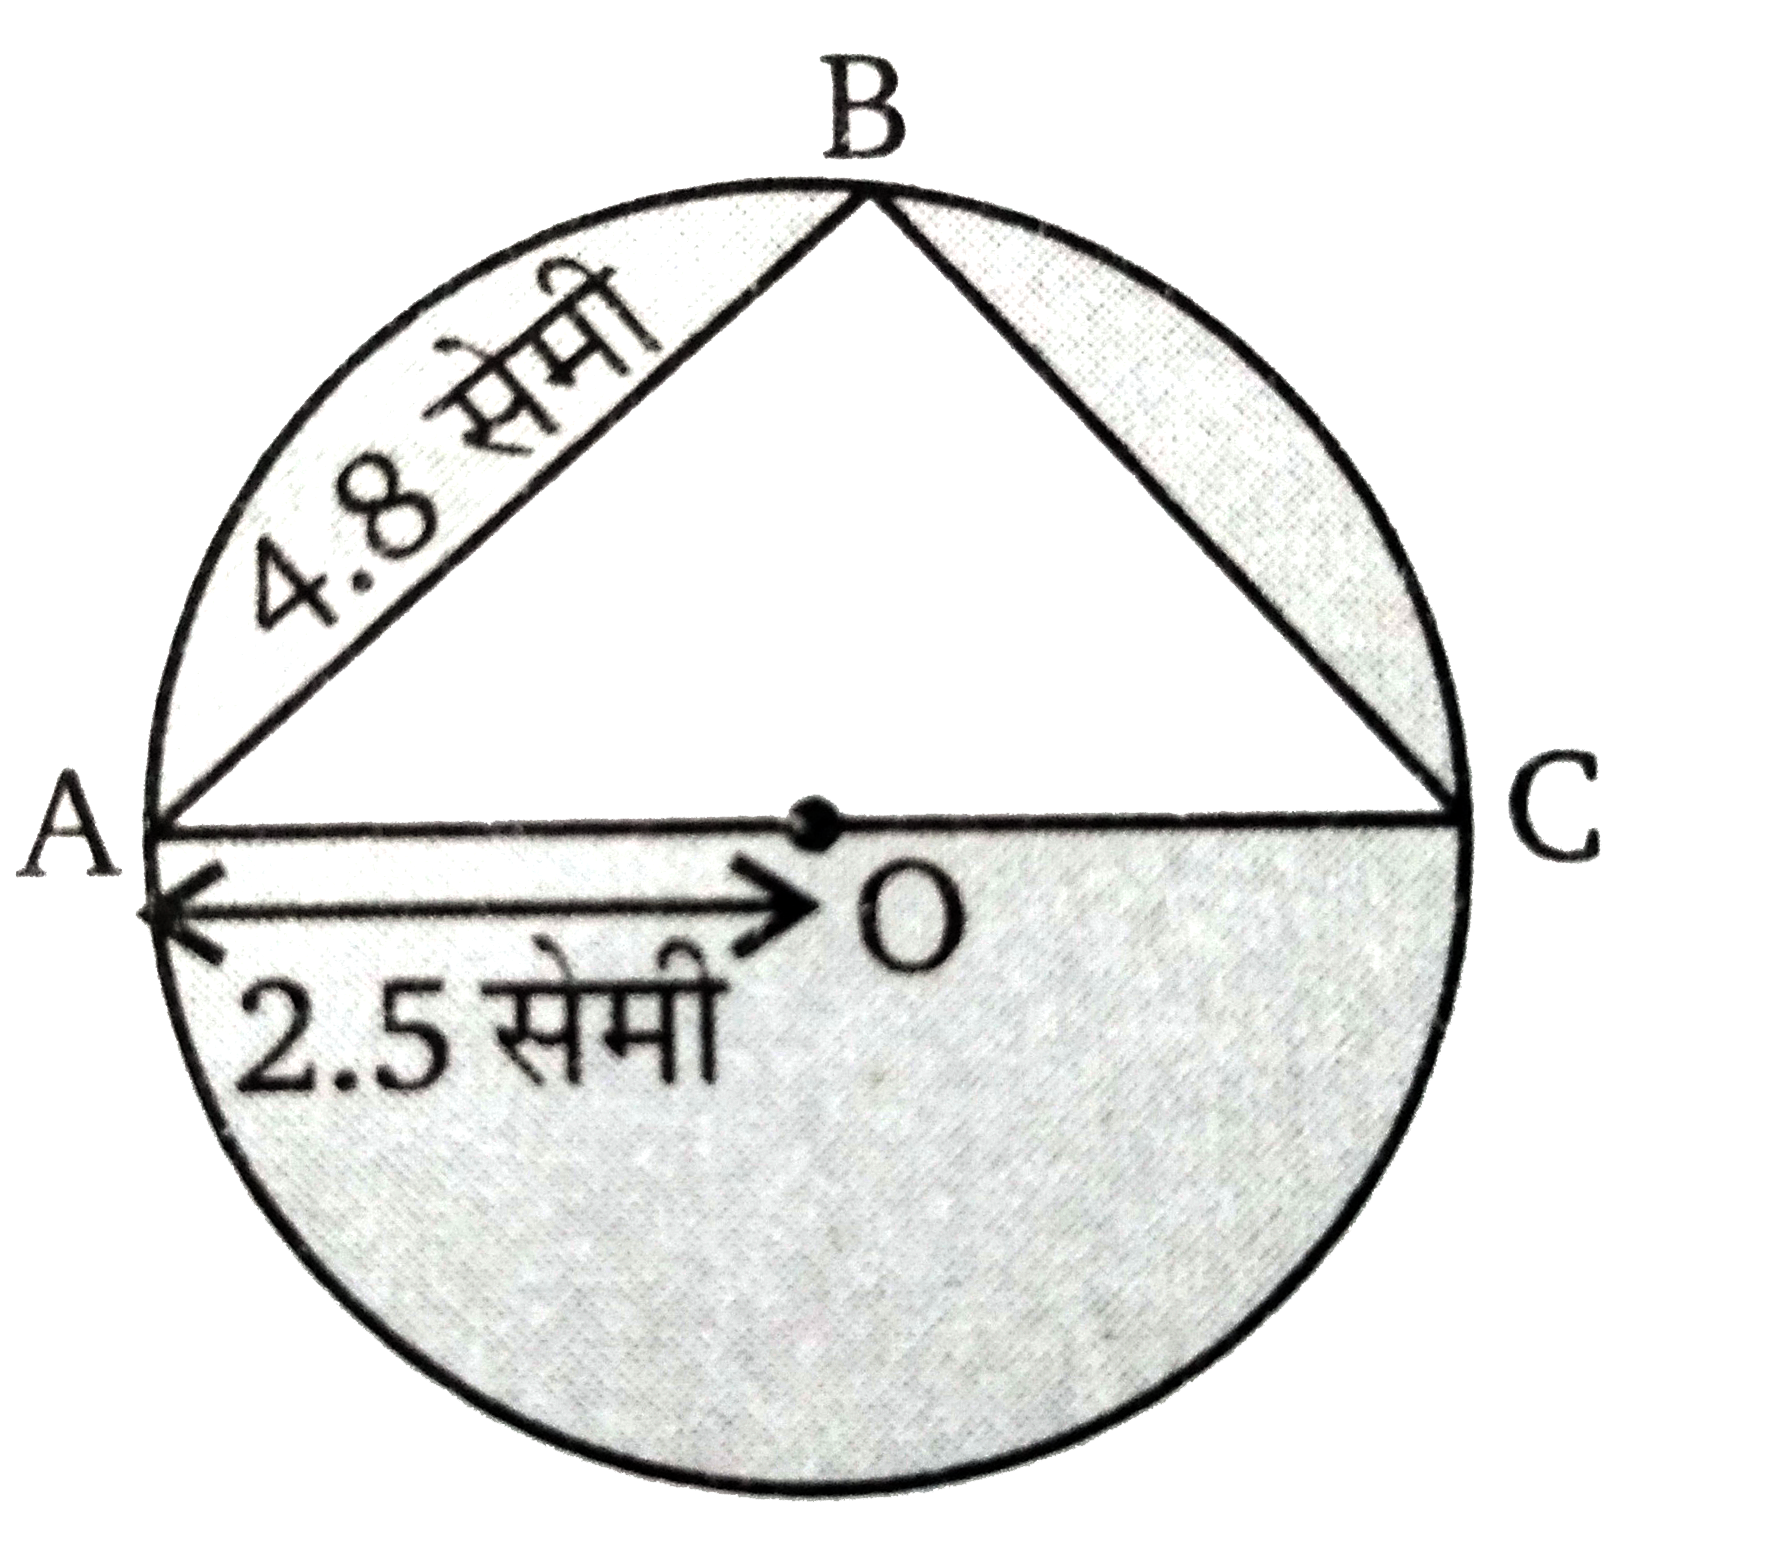 चित्र में वृत्त  का केन्द्र O है तथा त्रिज्या OA = 2.5 सेमी । तब BC का मान ज्ञात कीजिए।